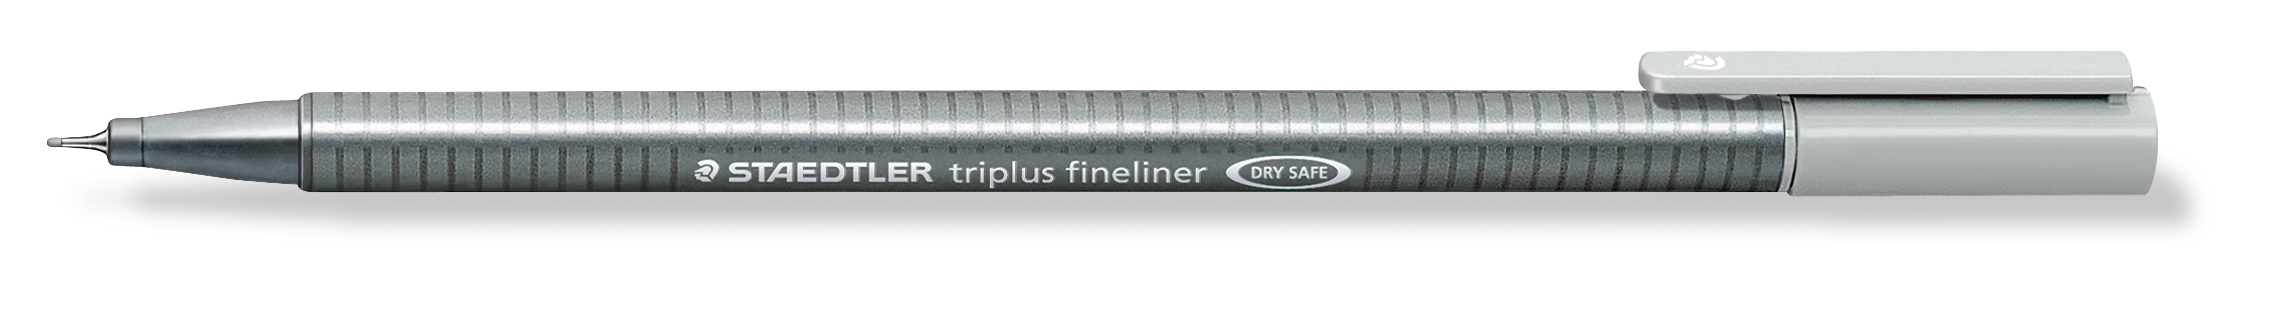 STAEDTLER Triplus Fineliner 0,3mm 334-82 argent